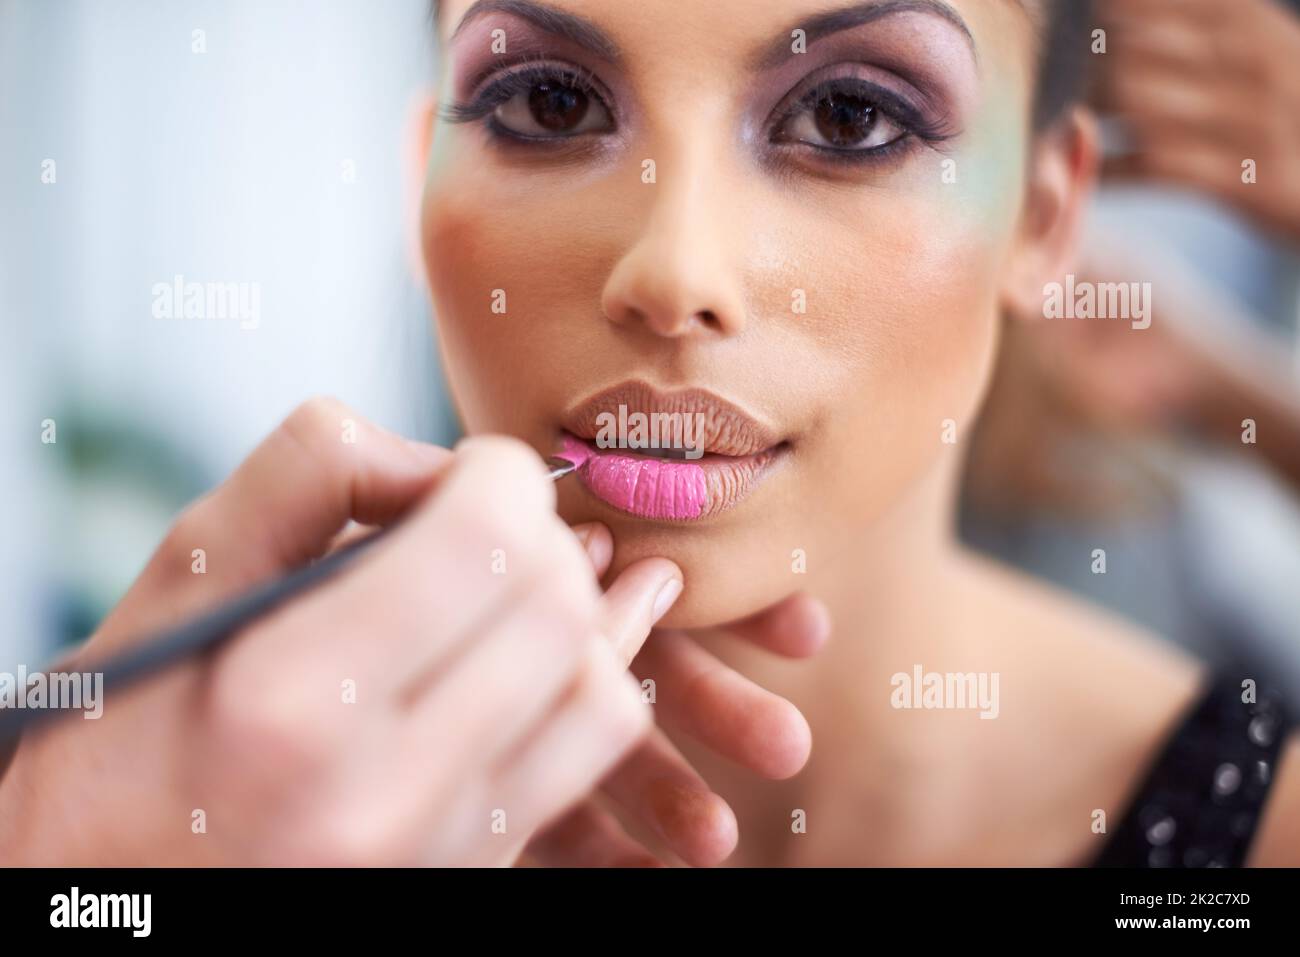 Ihre Schönheit zu verbessern. Eine junge Frau mit kosmetischen Verbesserungen, die Make-up aufgetragen hat. Stockfoto